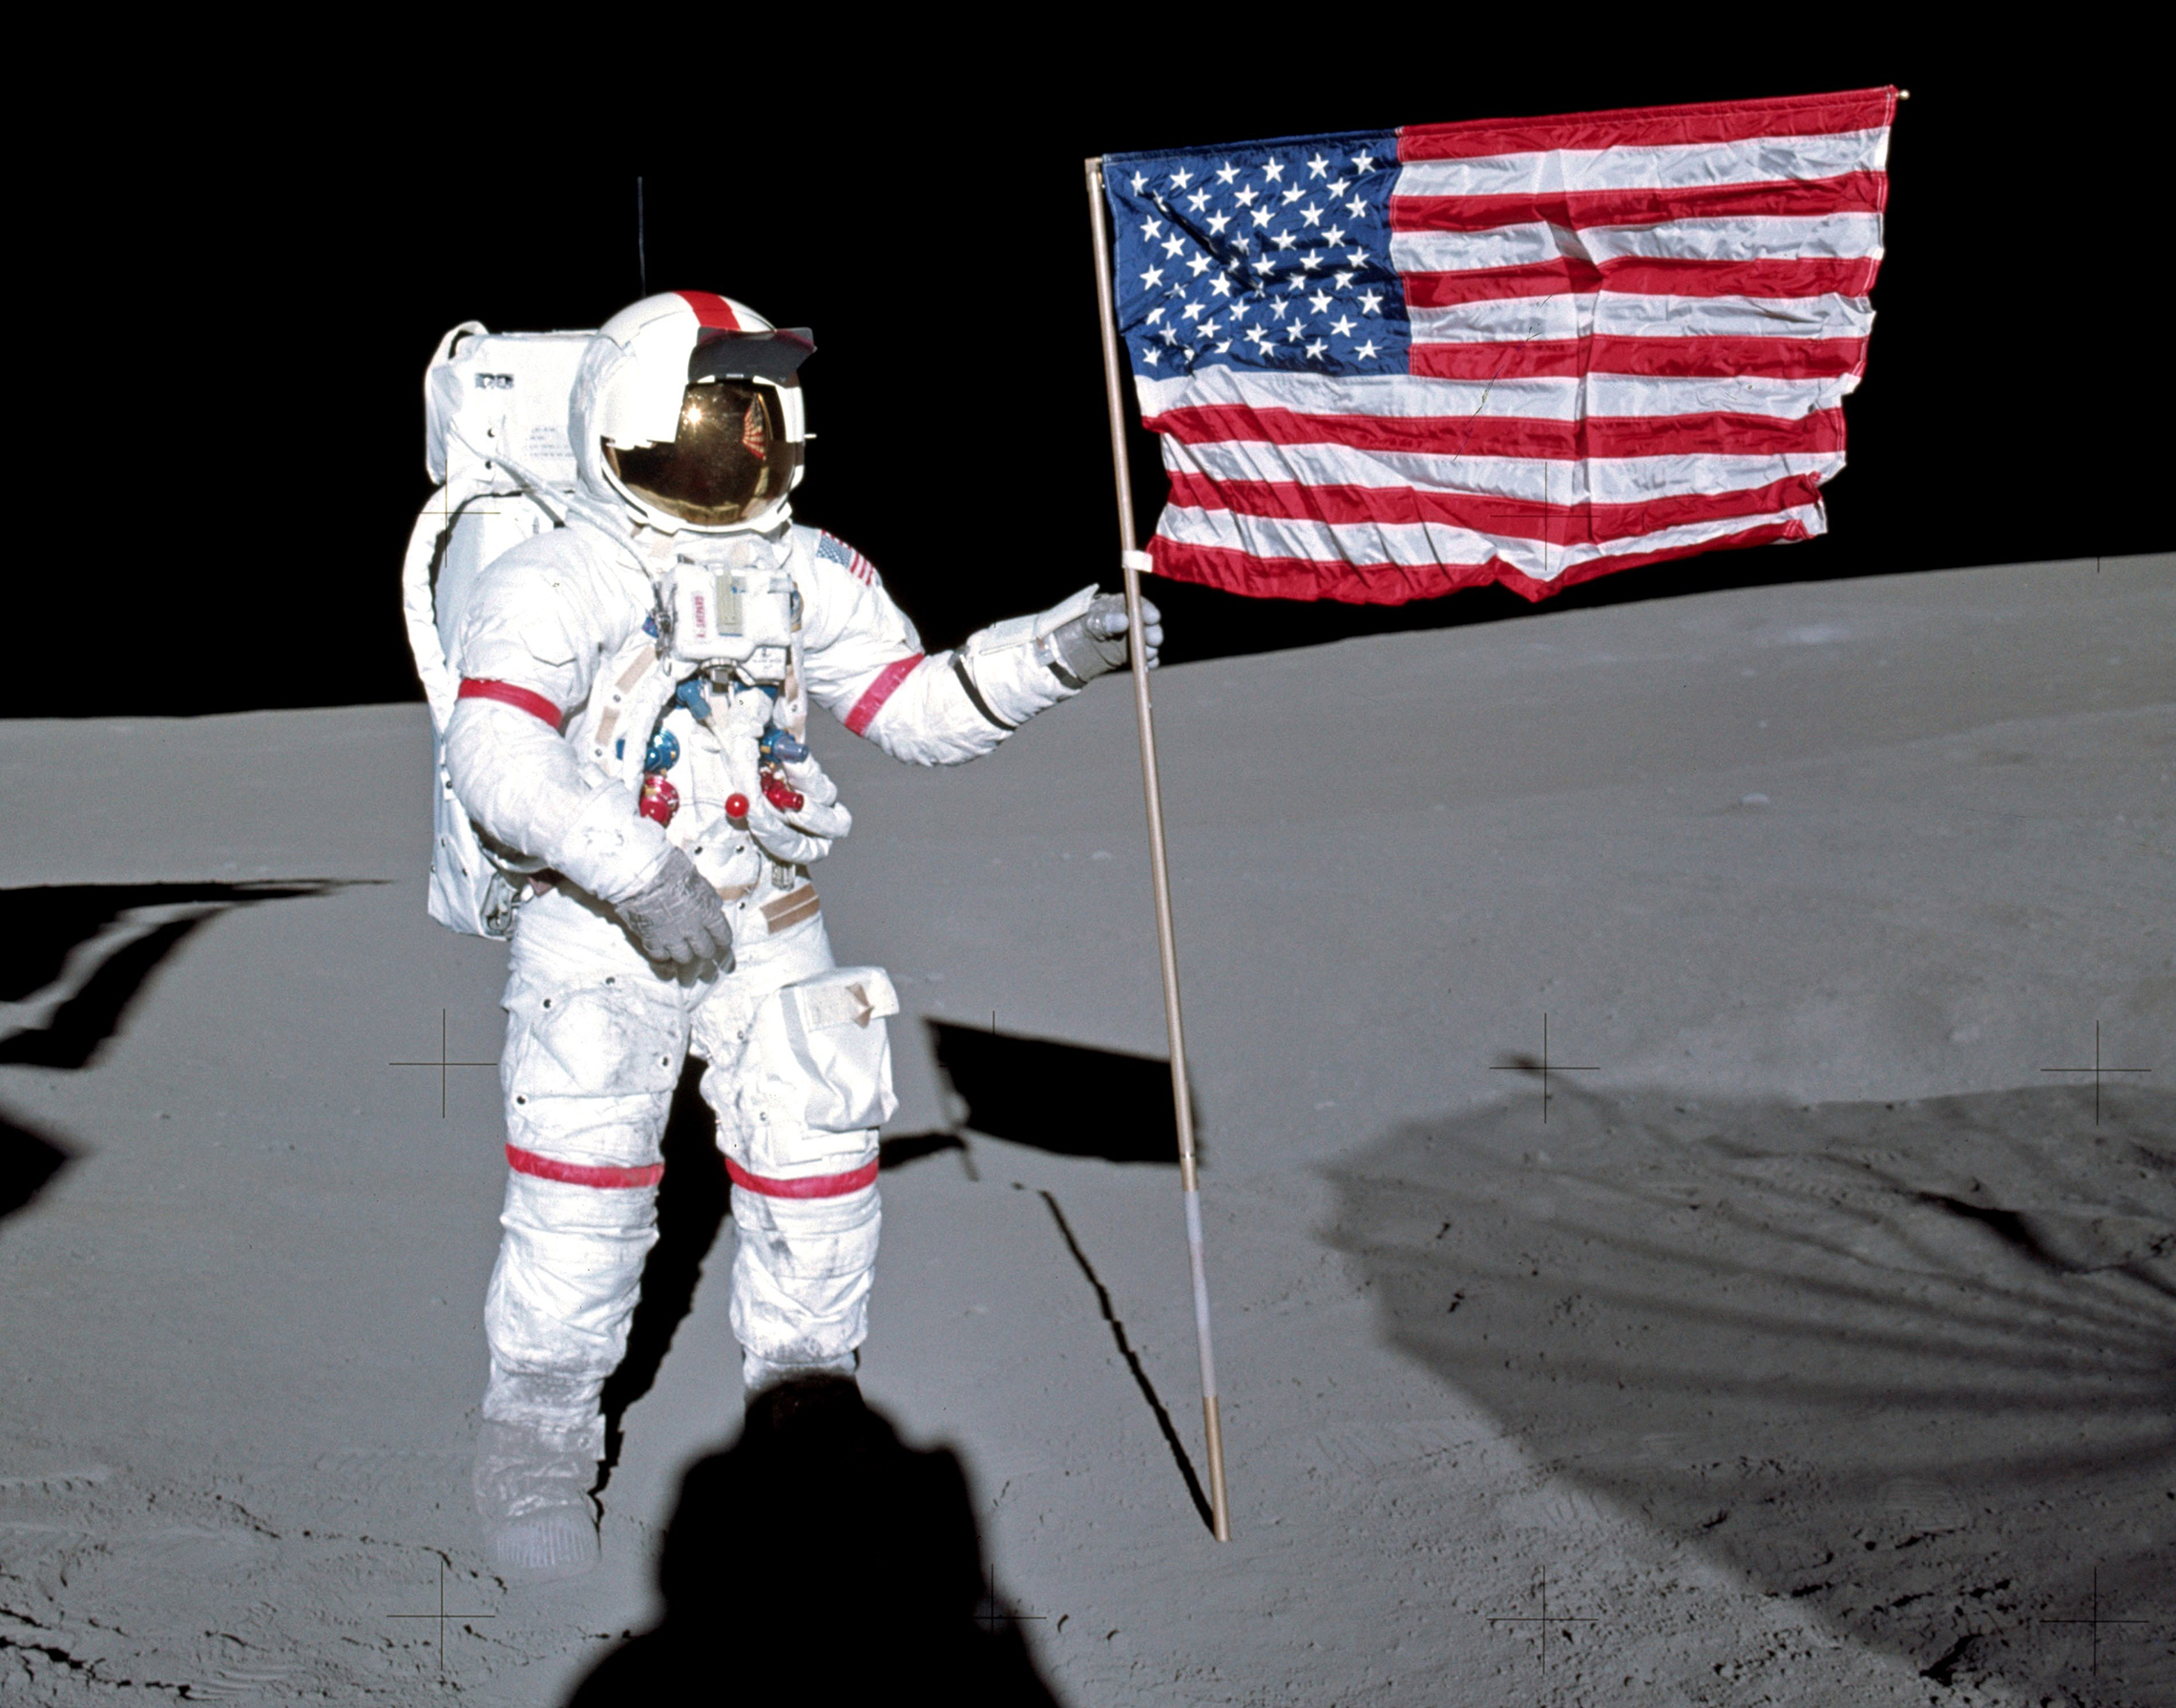 Alan Shepard plant de Amerikaanse vlag op de maan.5 februari 1971: Astronaut Alan B. Shepard Jr., commandant van de Apollo 14 lunar landing mission, staat bij de Amerikaanse vlag op het maanoppervlak tijdens de vroege momenten van de eerste extravehiculaire activiteit van de missie. Terwijl Shepard en astronaut Edgar D. Mitchell, de piloot van de maanmodule, de maan aan het verkennen waren, manoeuvreerde astronaut Stuart A. Roosa, piloot van de commandomodule, de commandomodule in een baan om de maan. (NASA Photo)